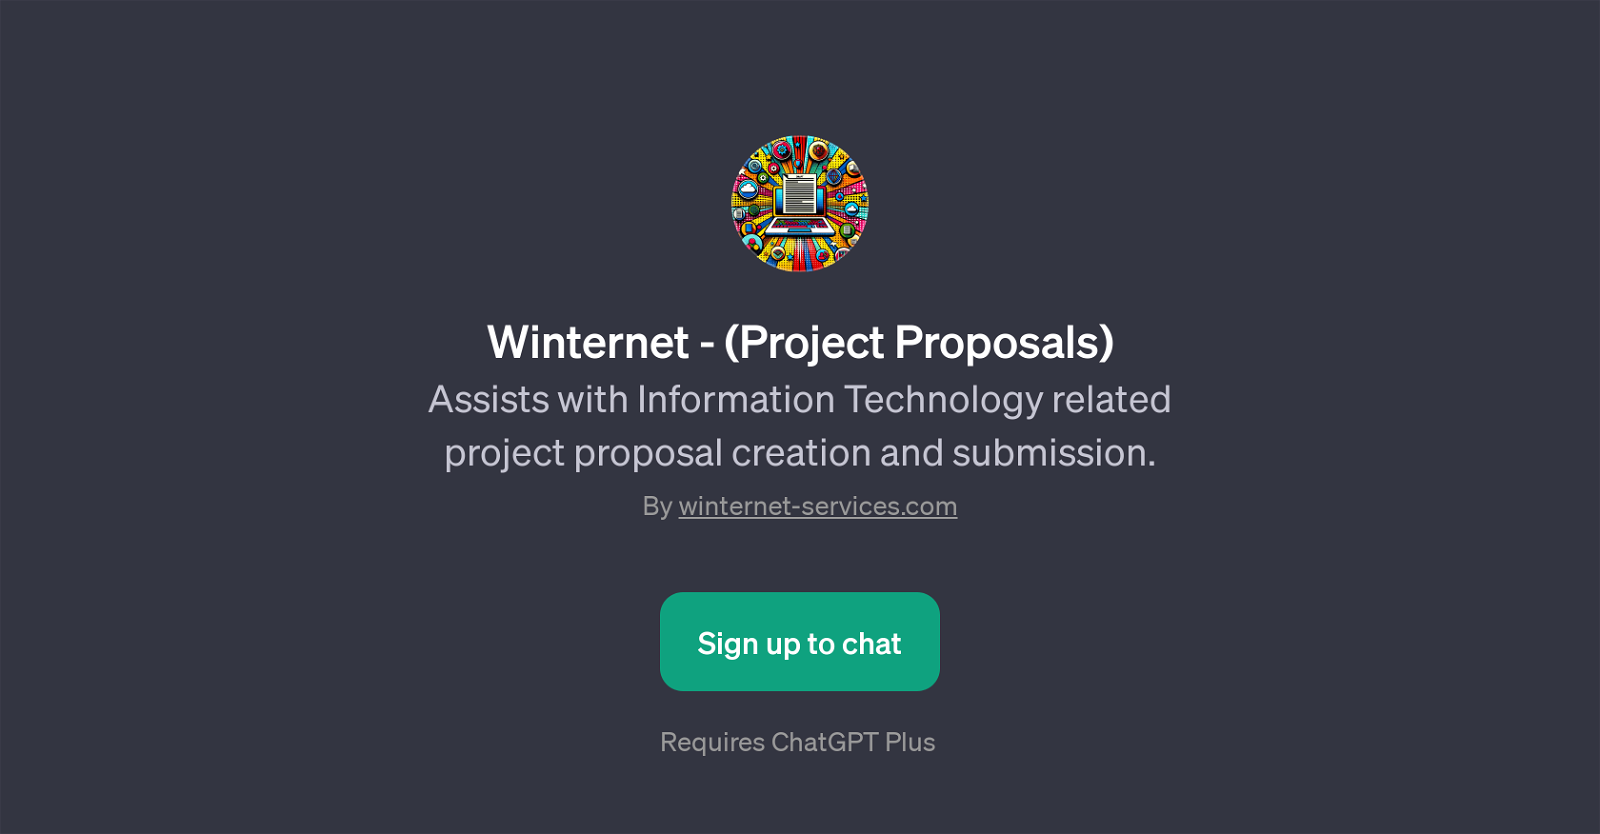 Winternet website